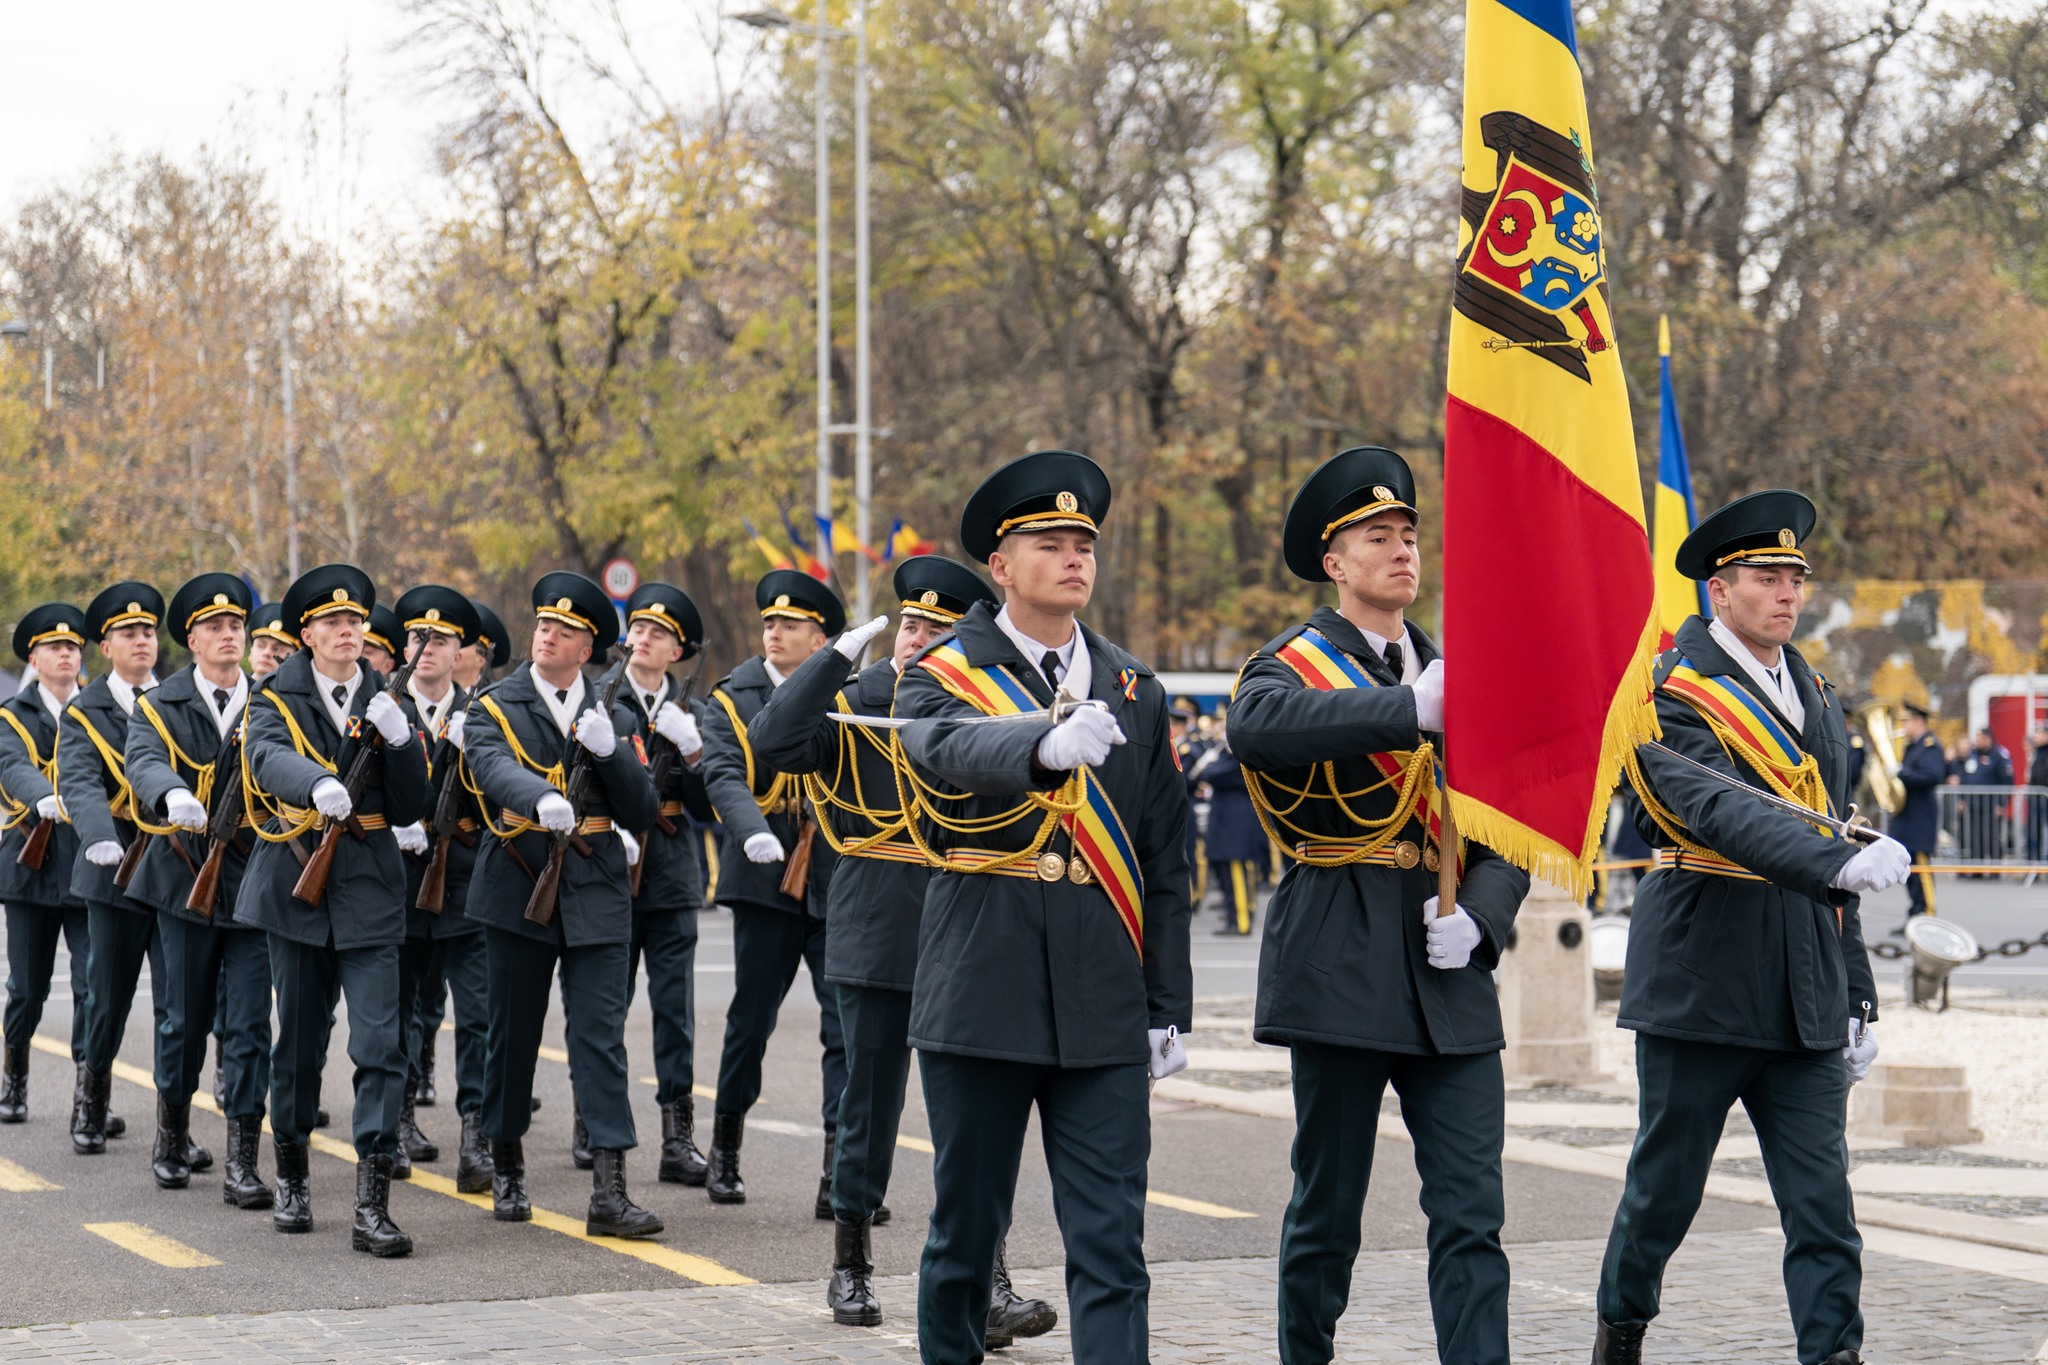 (ВИДЕО, ФОТО) Военные из Молдовы приняли участие в параде в Румынии. Вместе с солдатами из 10 стран